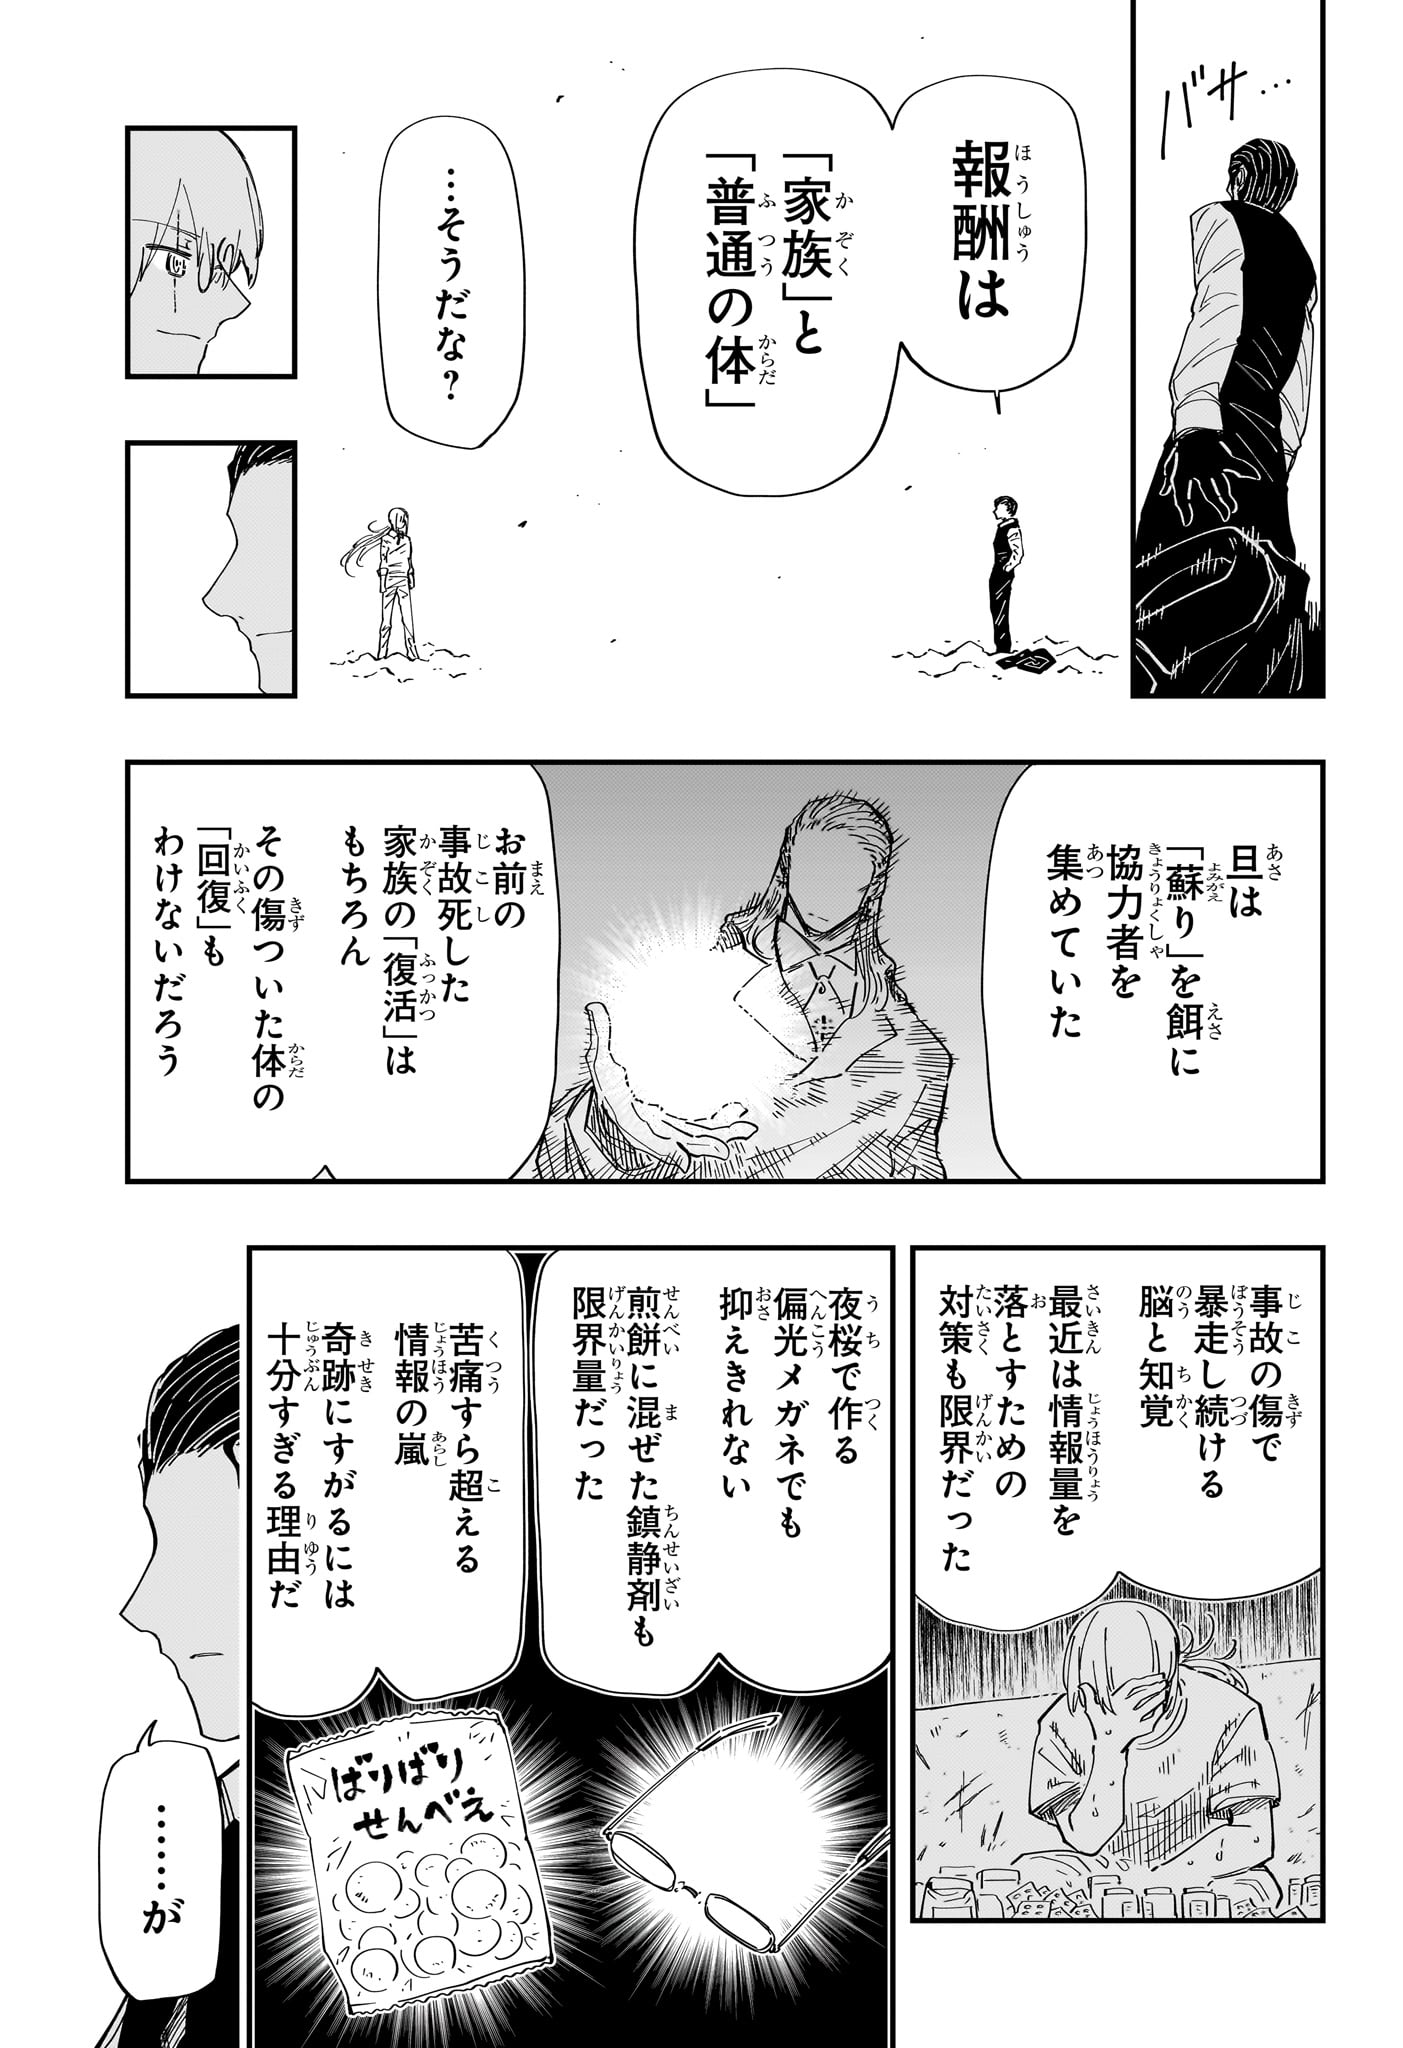 Yozakura-san Chi no Daisakusen - Chapter 228 - Page 5